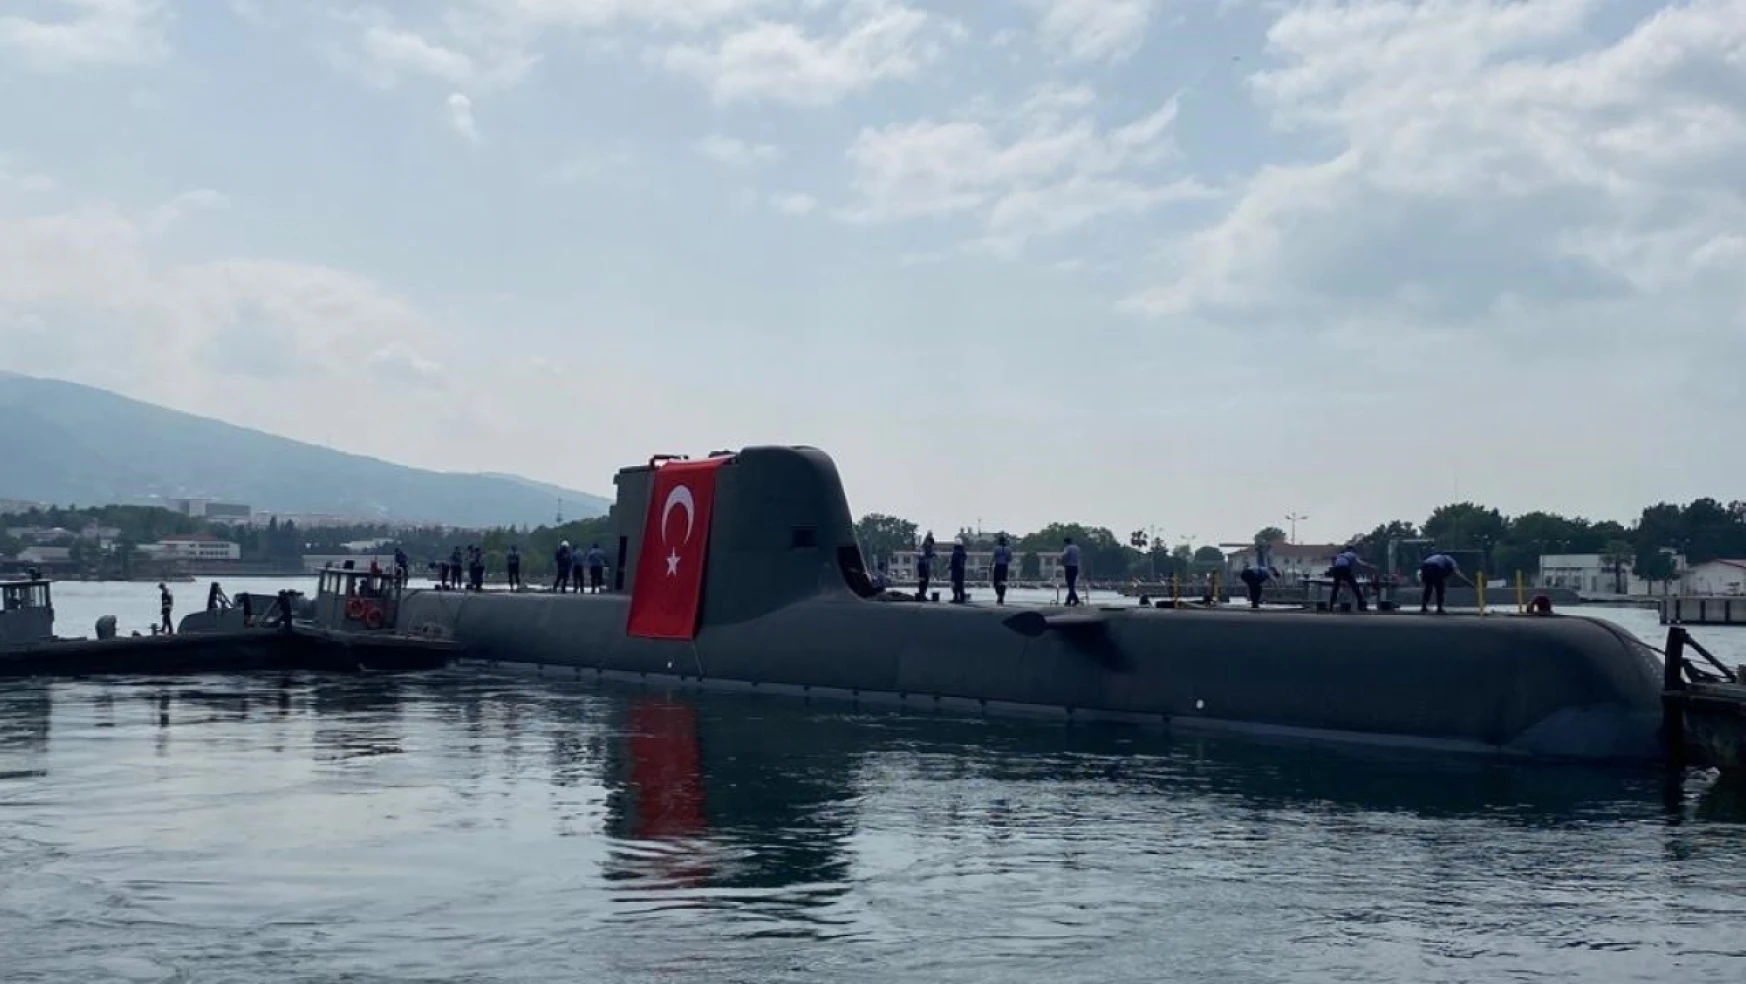 Yeni tip denizaltı projesinin ikinci gemisi Hızırreis suya indirildi